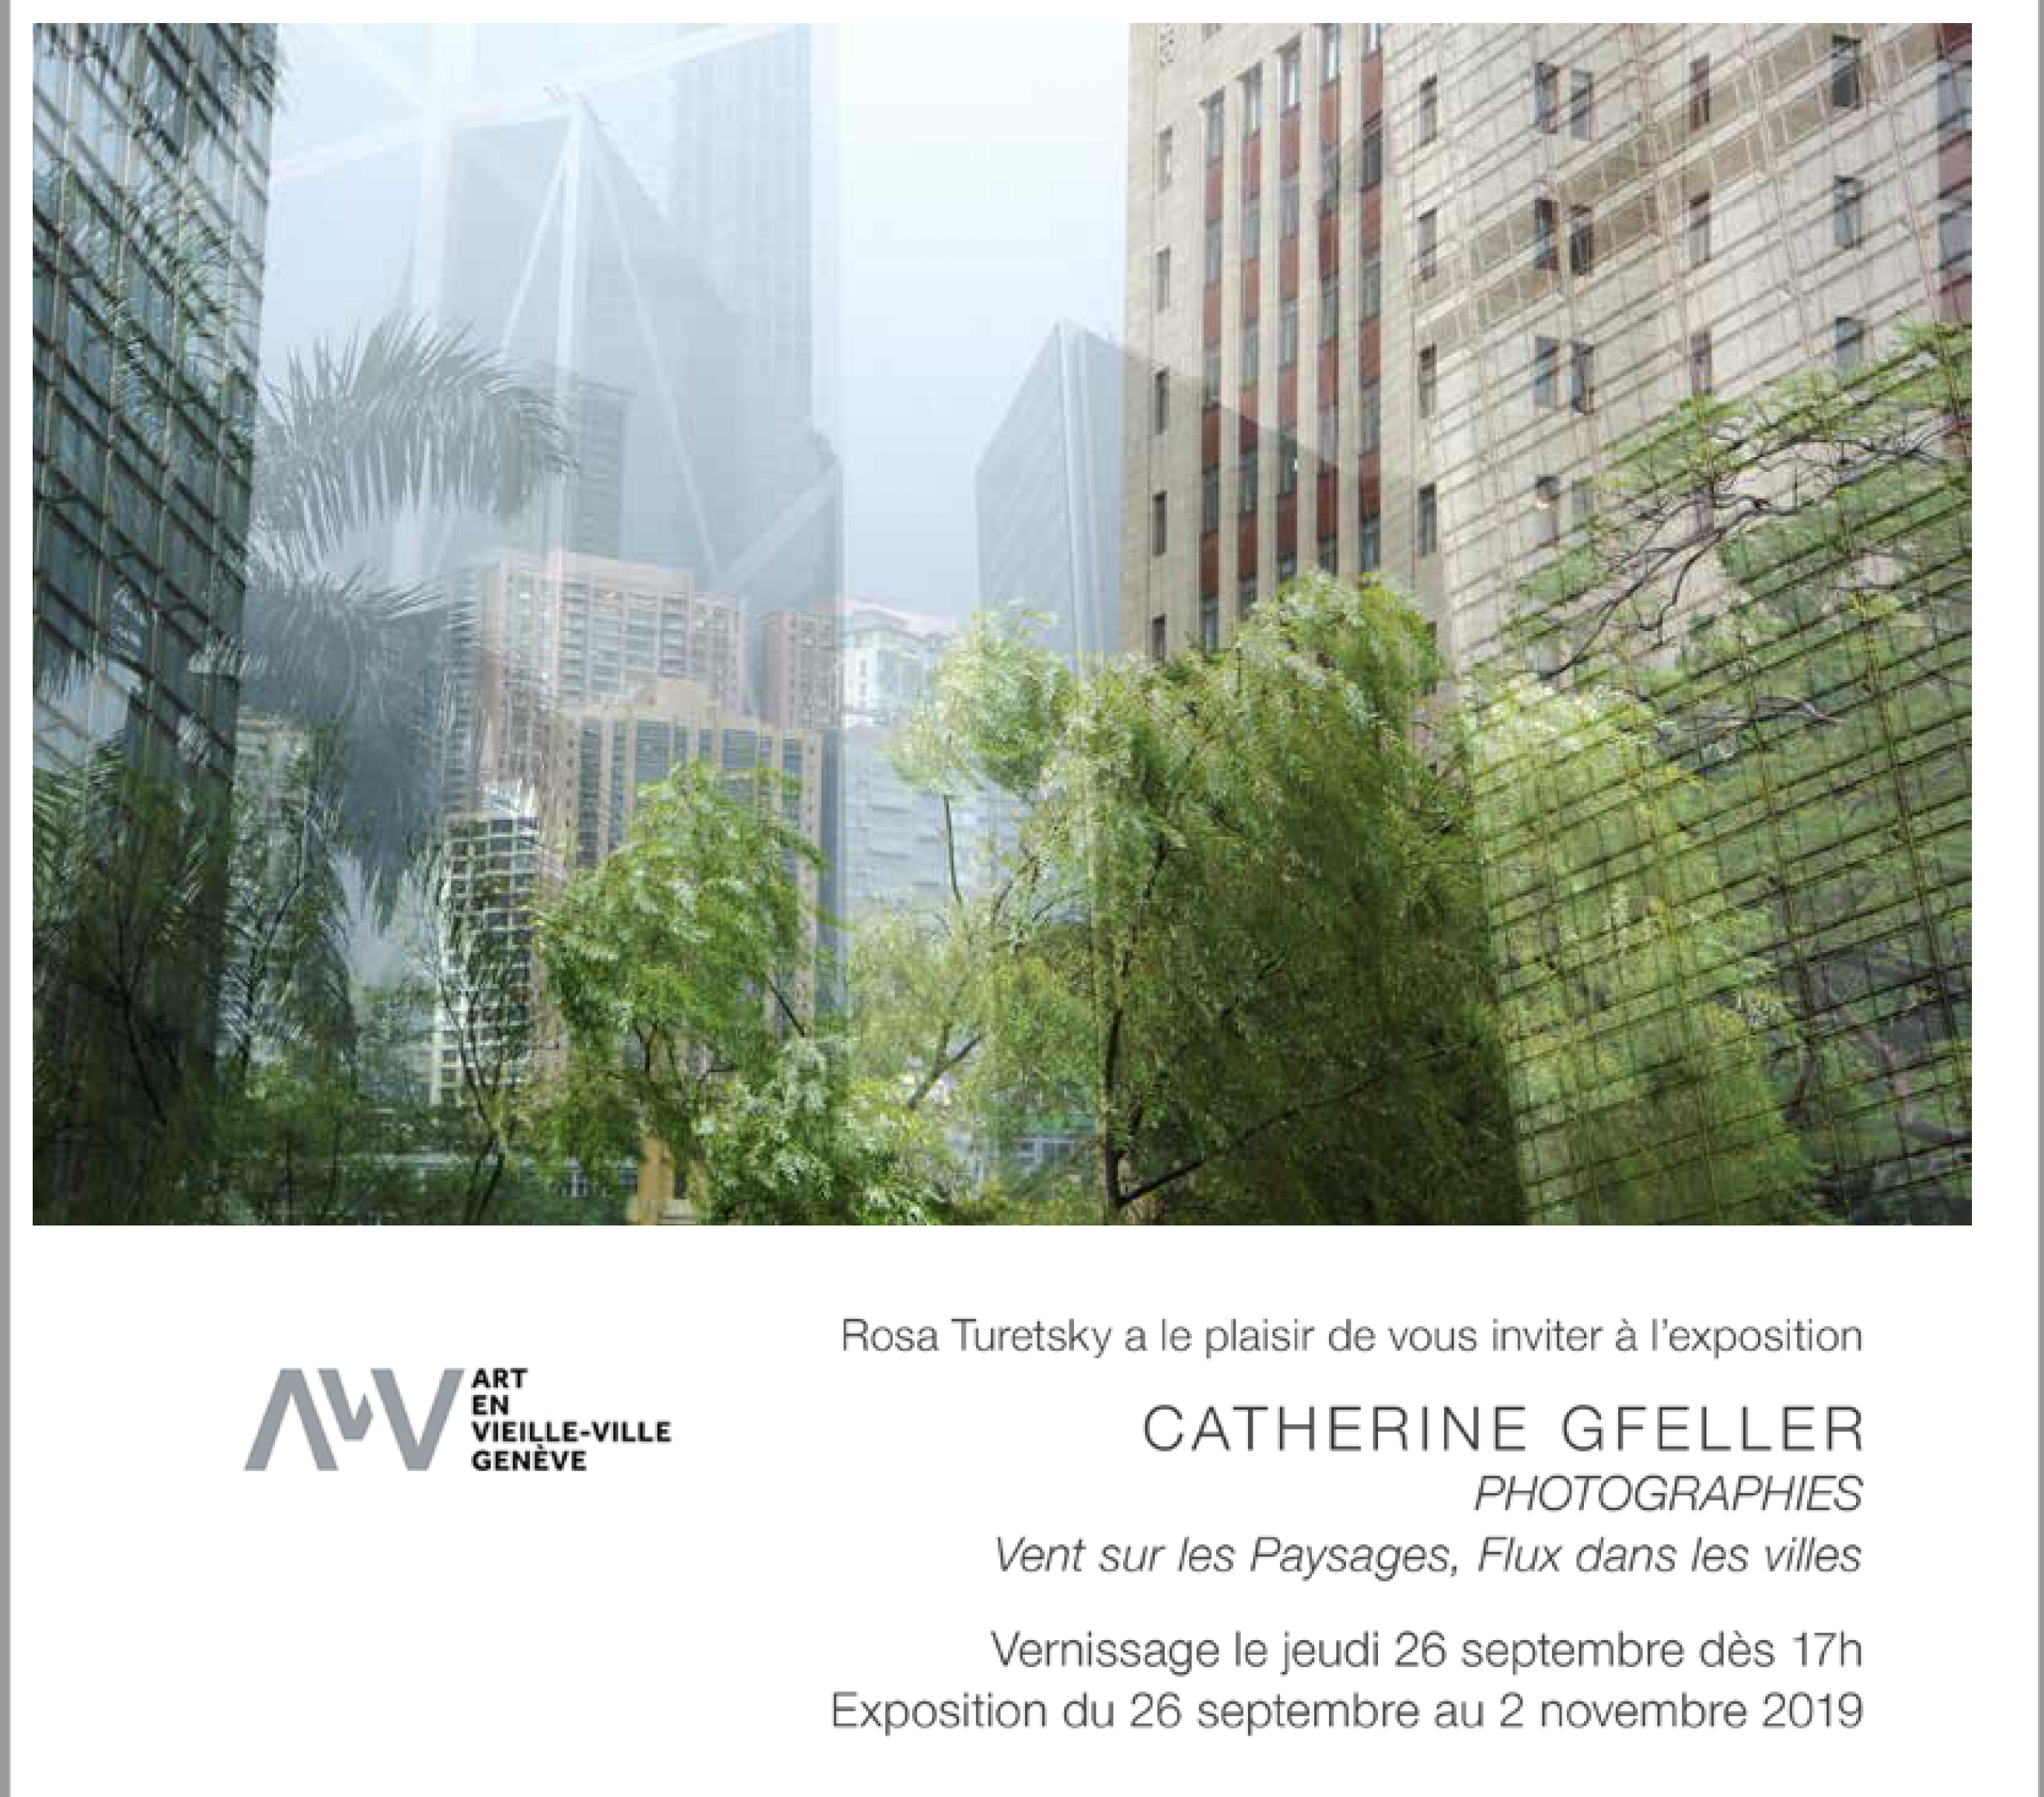 Art en Vieille Ville Genève, 26.09.2019 - 2.11.2019, Rosa Turetsky